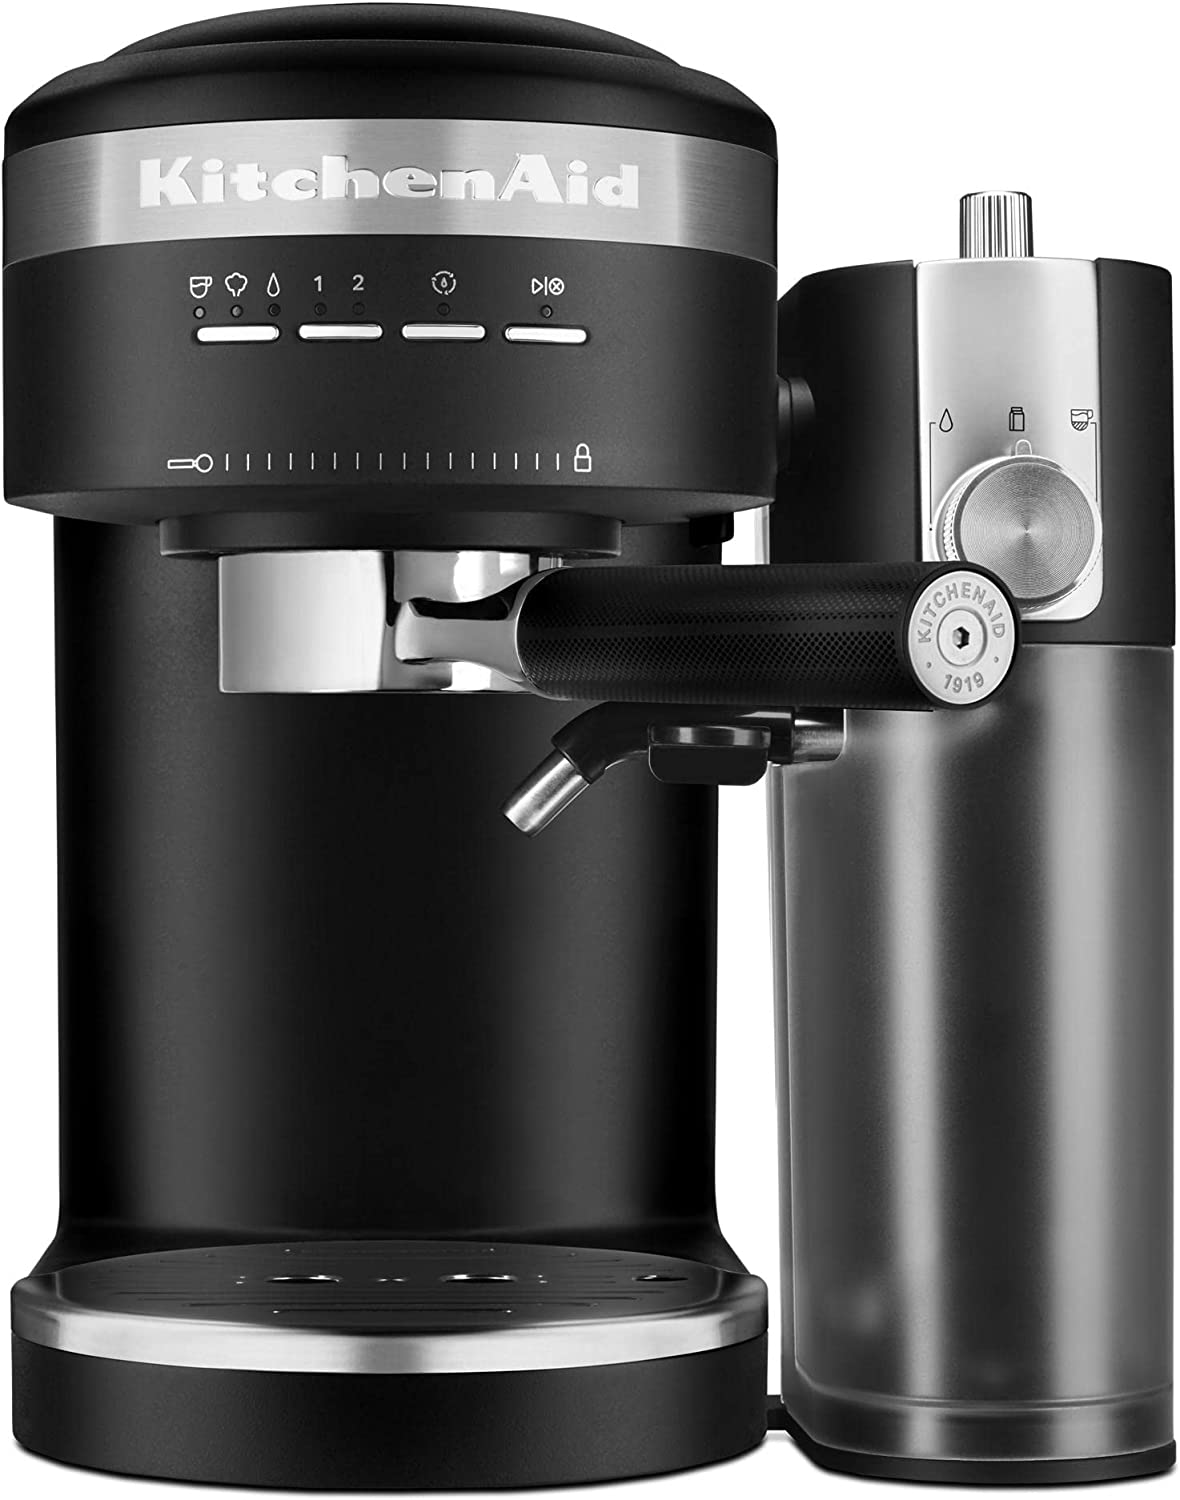 KitchenAid Semi-Automatic Espresso Machine w/ Automatic Milk Frother Attachment (Matte Black) $250 + Free Shipping